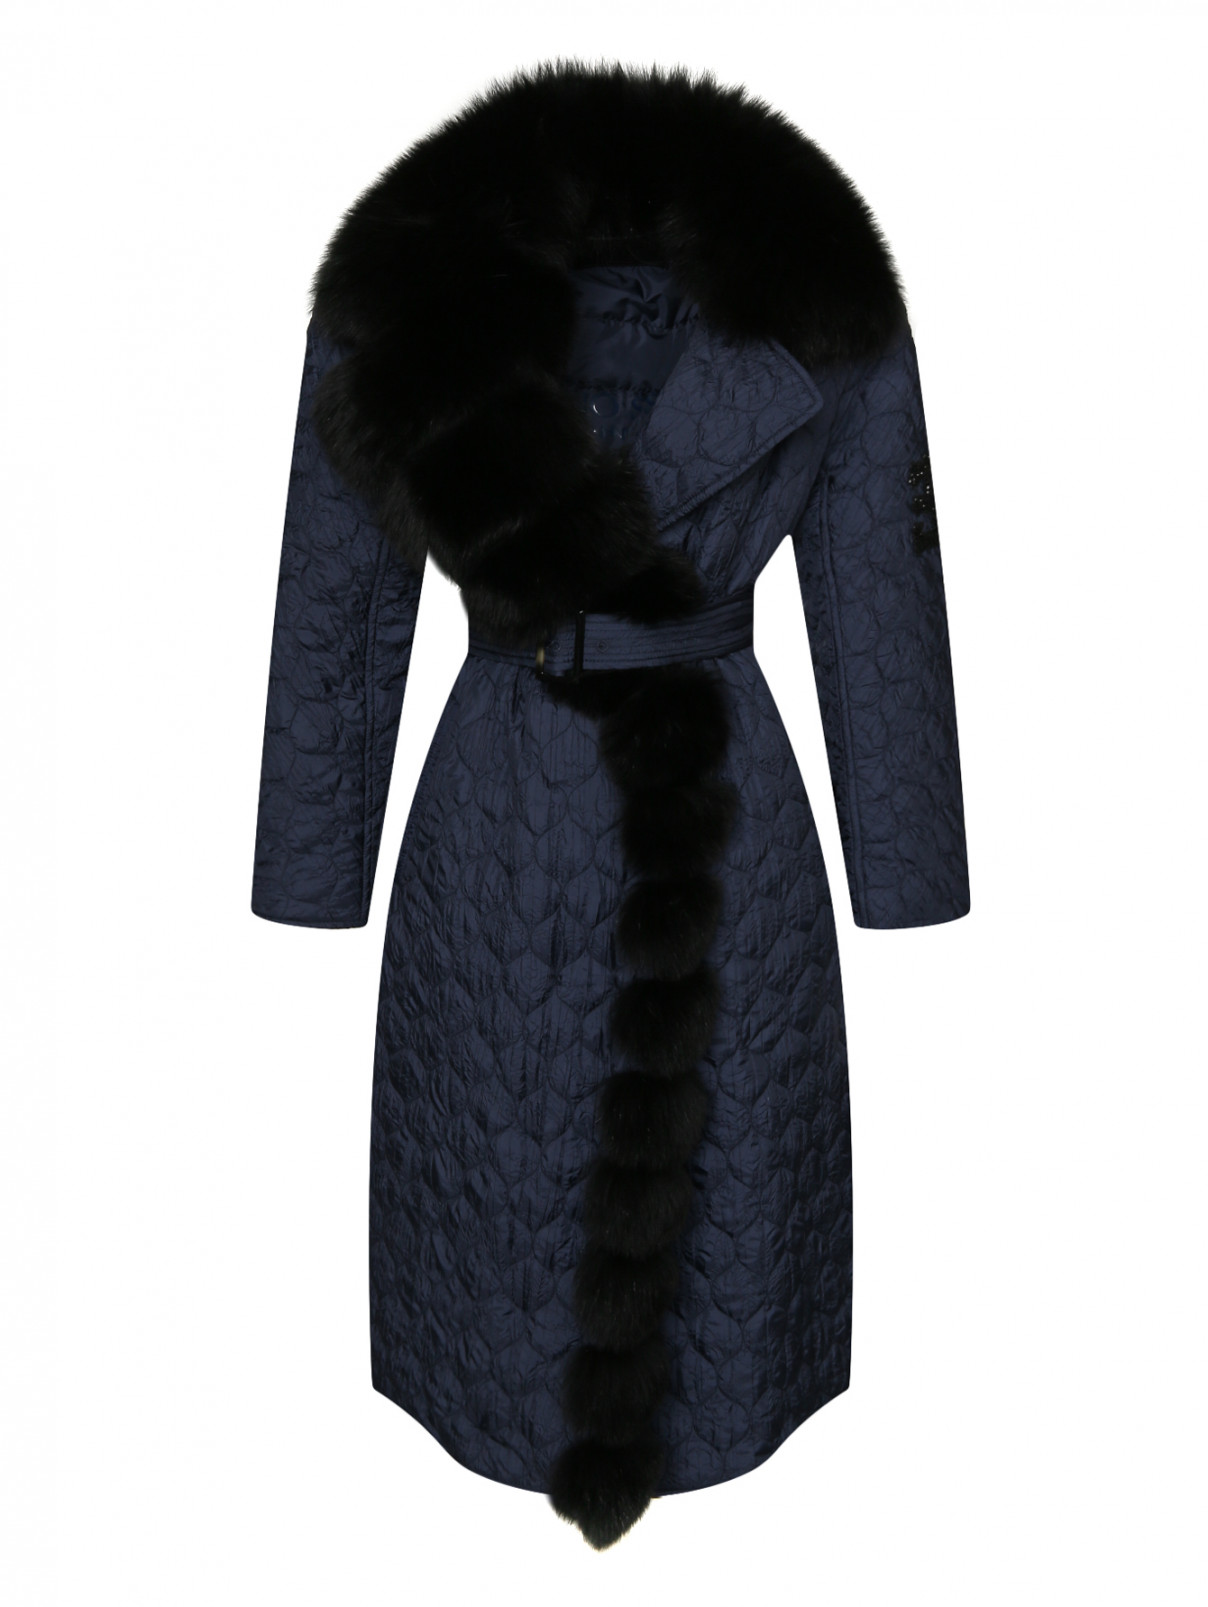 Пальто пуховое с поясом с меховой оторочкой на воротнике Ermanno Scervino  –  Общий вид  – Цвет:  Синий